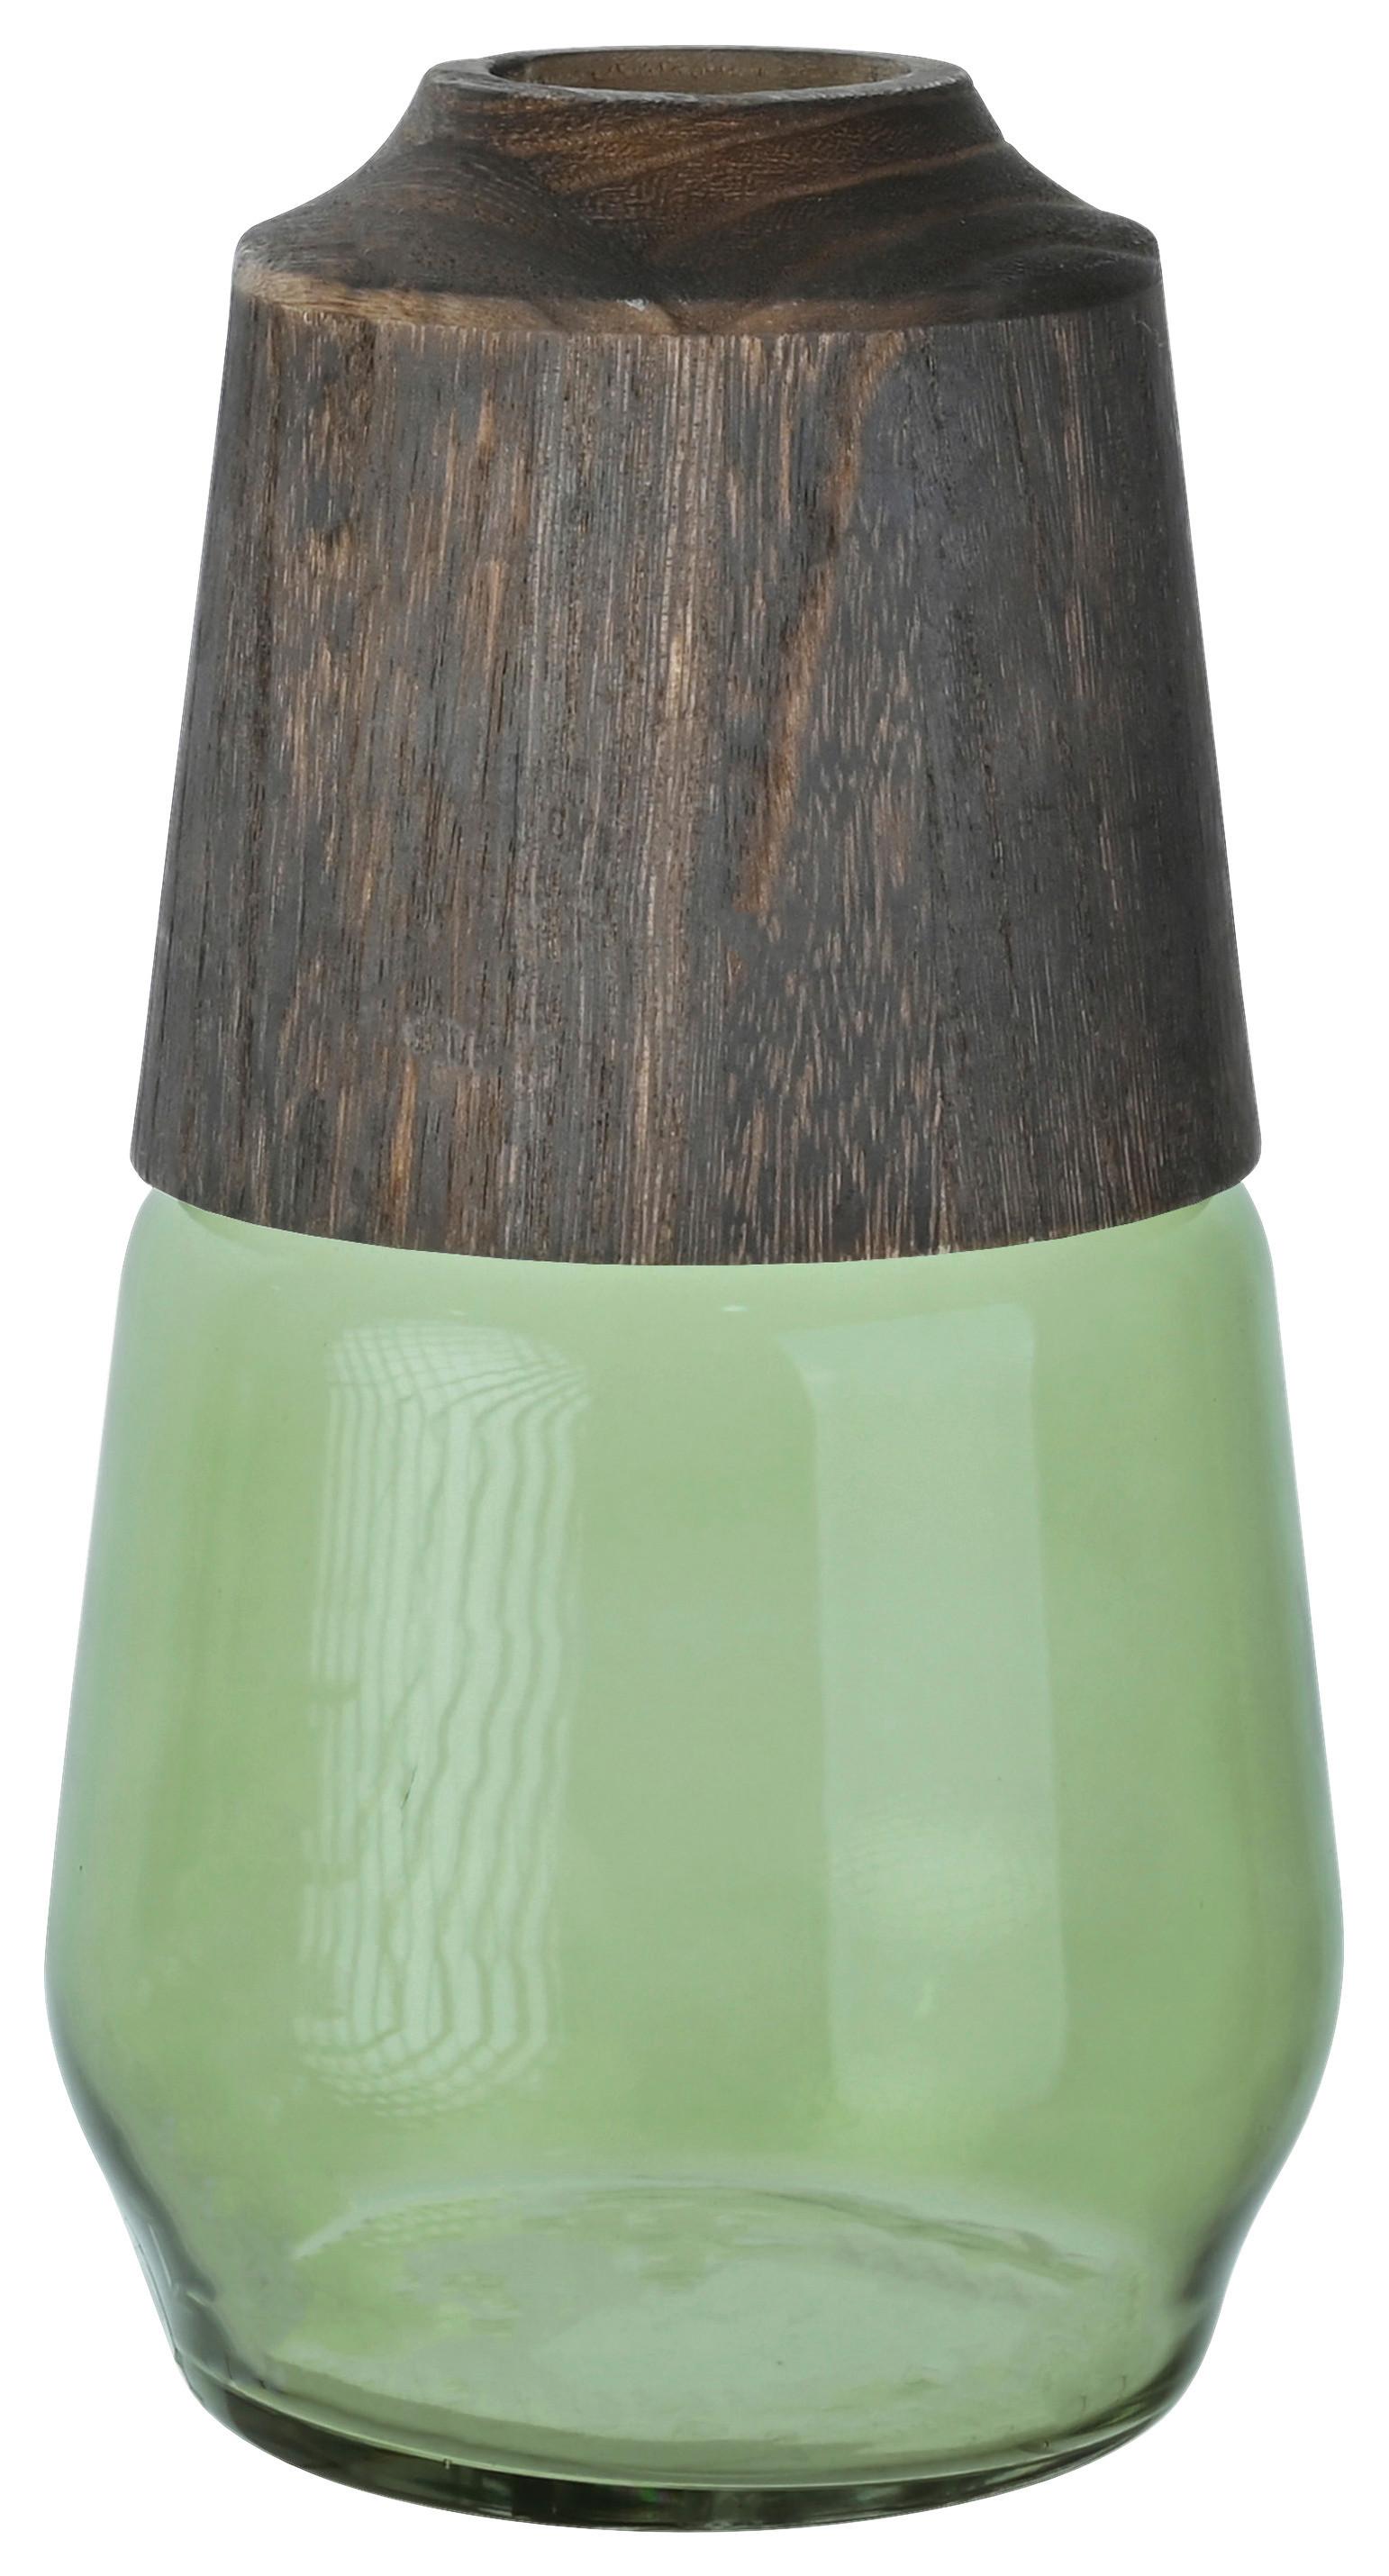 Vaza Wood -Paz- - zelena/rjava, steklo/les (16/29cm) - Premium Living